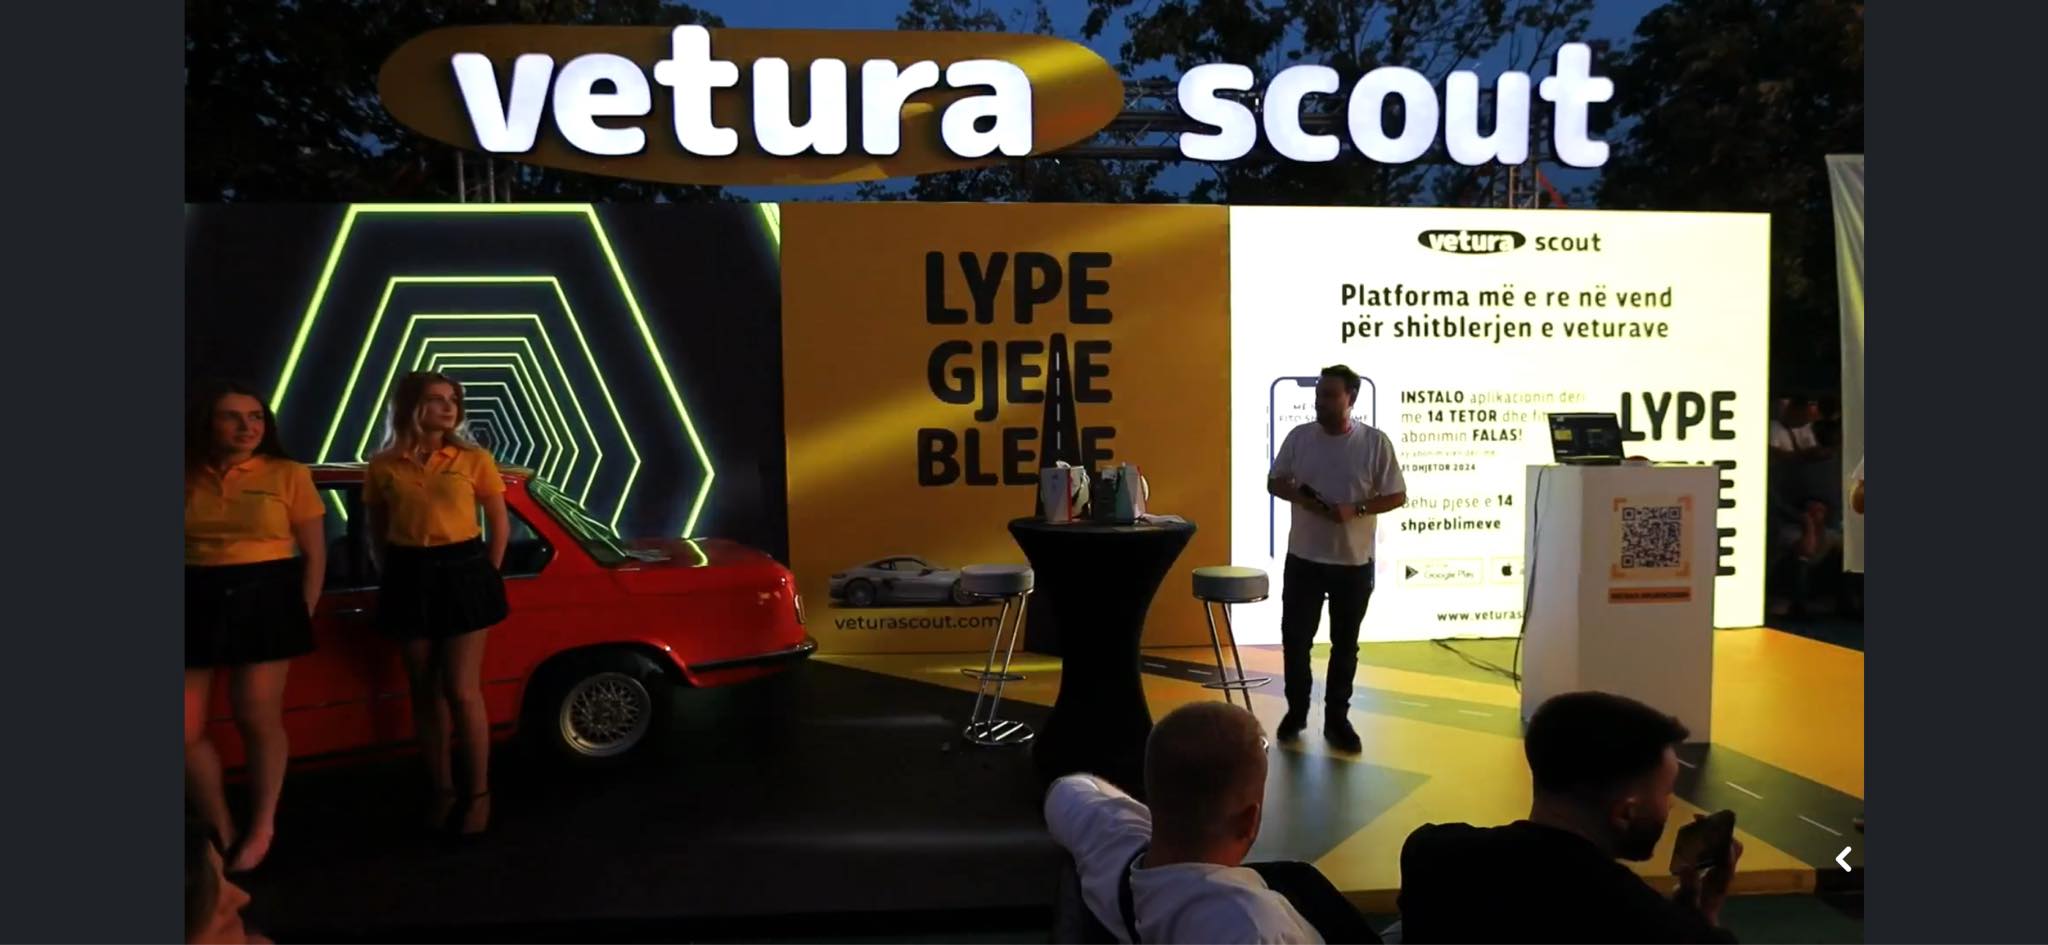 Edhe një finale sonte - u lansua aplikacioni më i ri për shitblerjen e veturave, VETURA SCOUT!